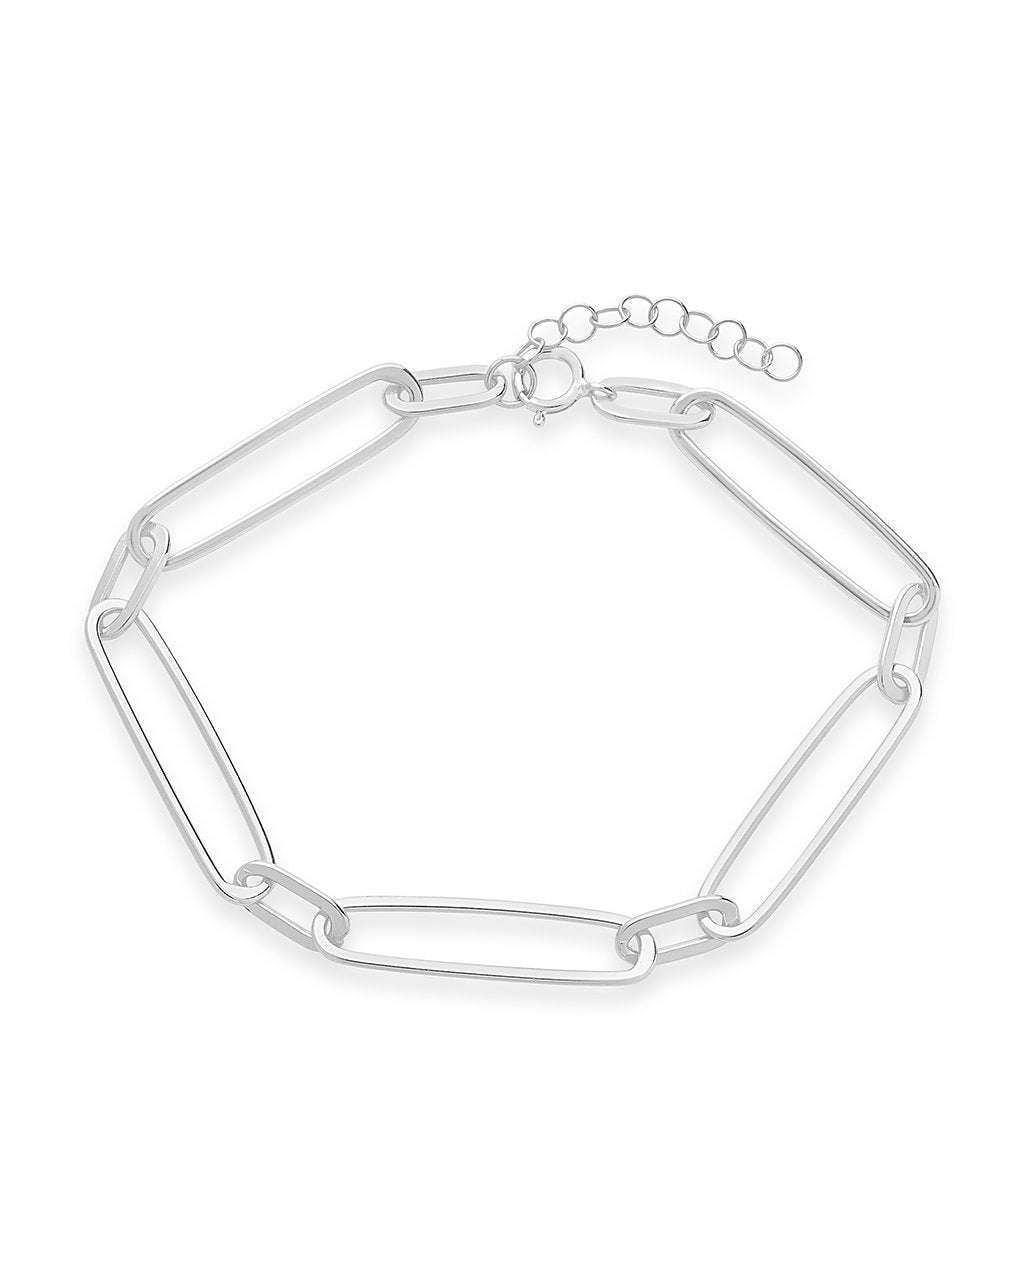 Stacked Chain Bracelet Set of 3 Bracelet Sterling Forever 